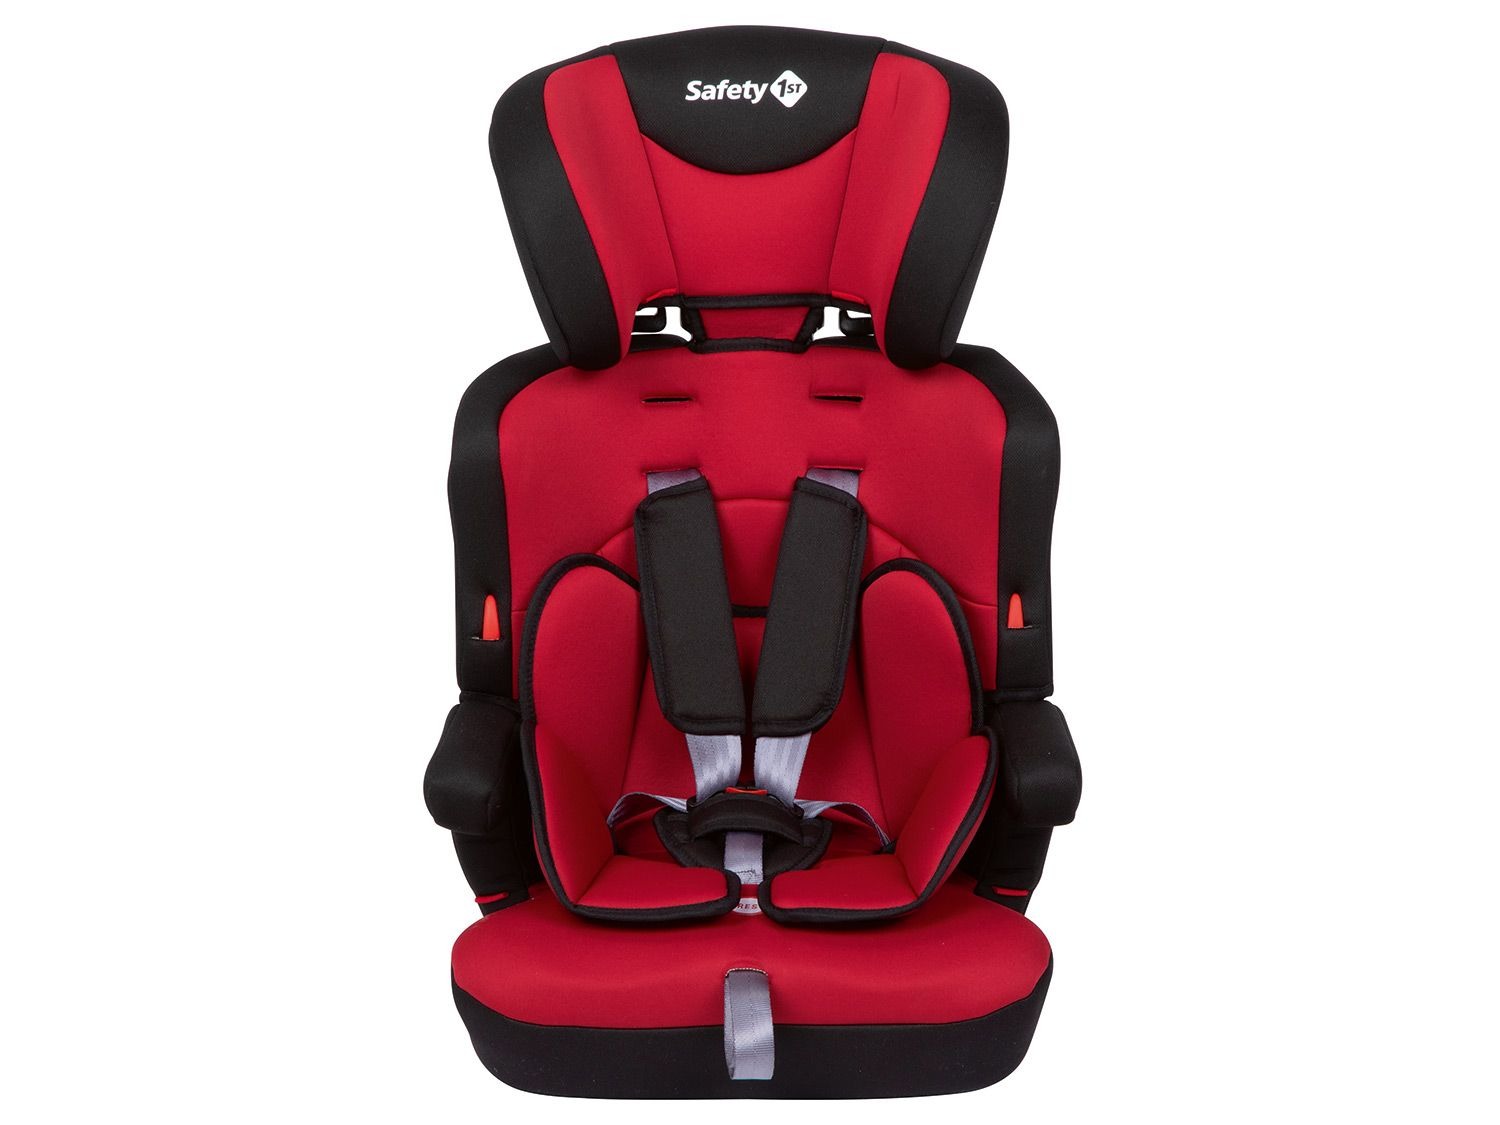 mitwachsender Gruppe 1/2/3 ab ca full red rot 12 M Safety 1st Ever Safe Auto-Kindersitz 9-36 kg bis 12 J. 